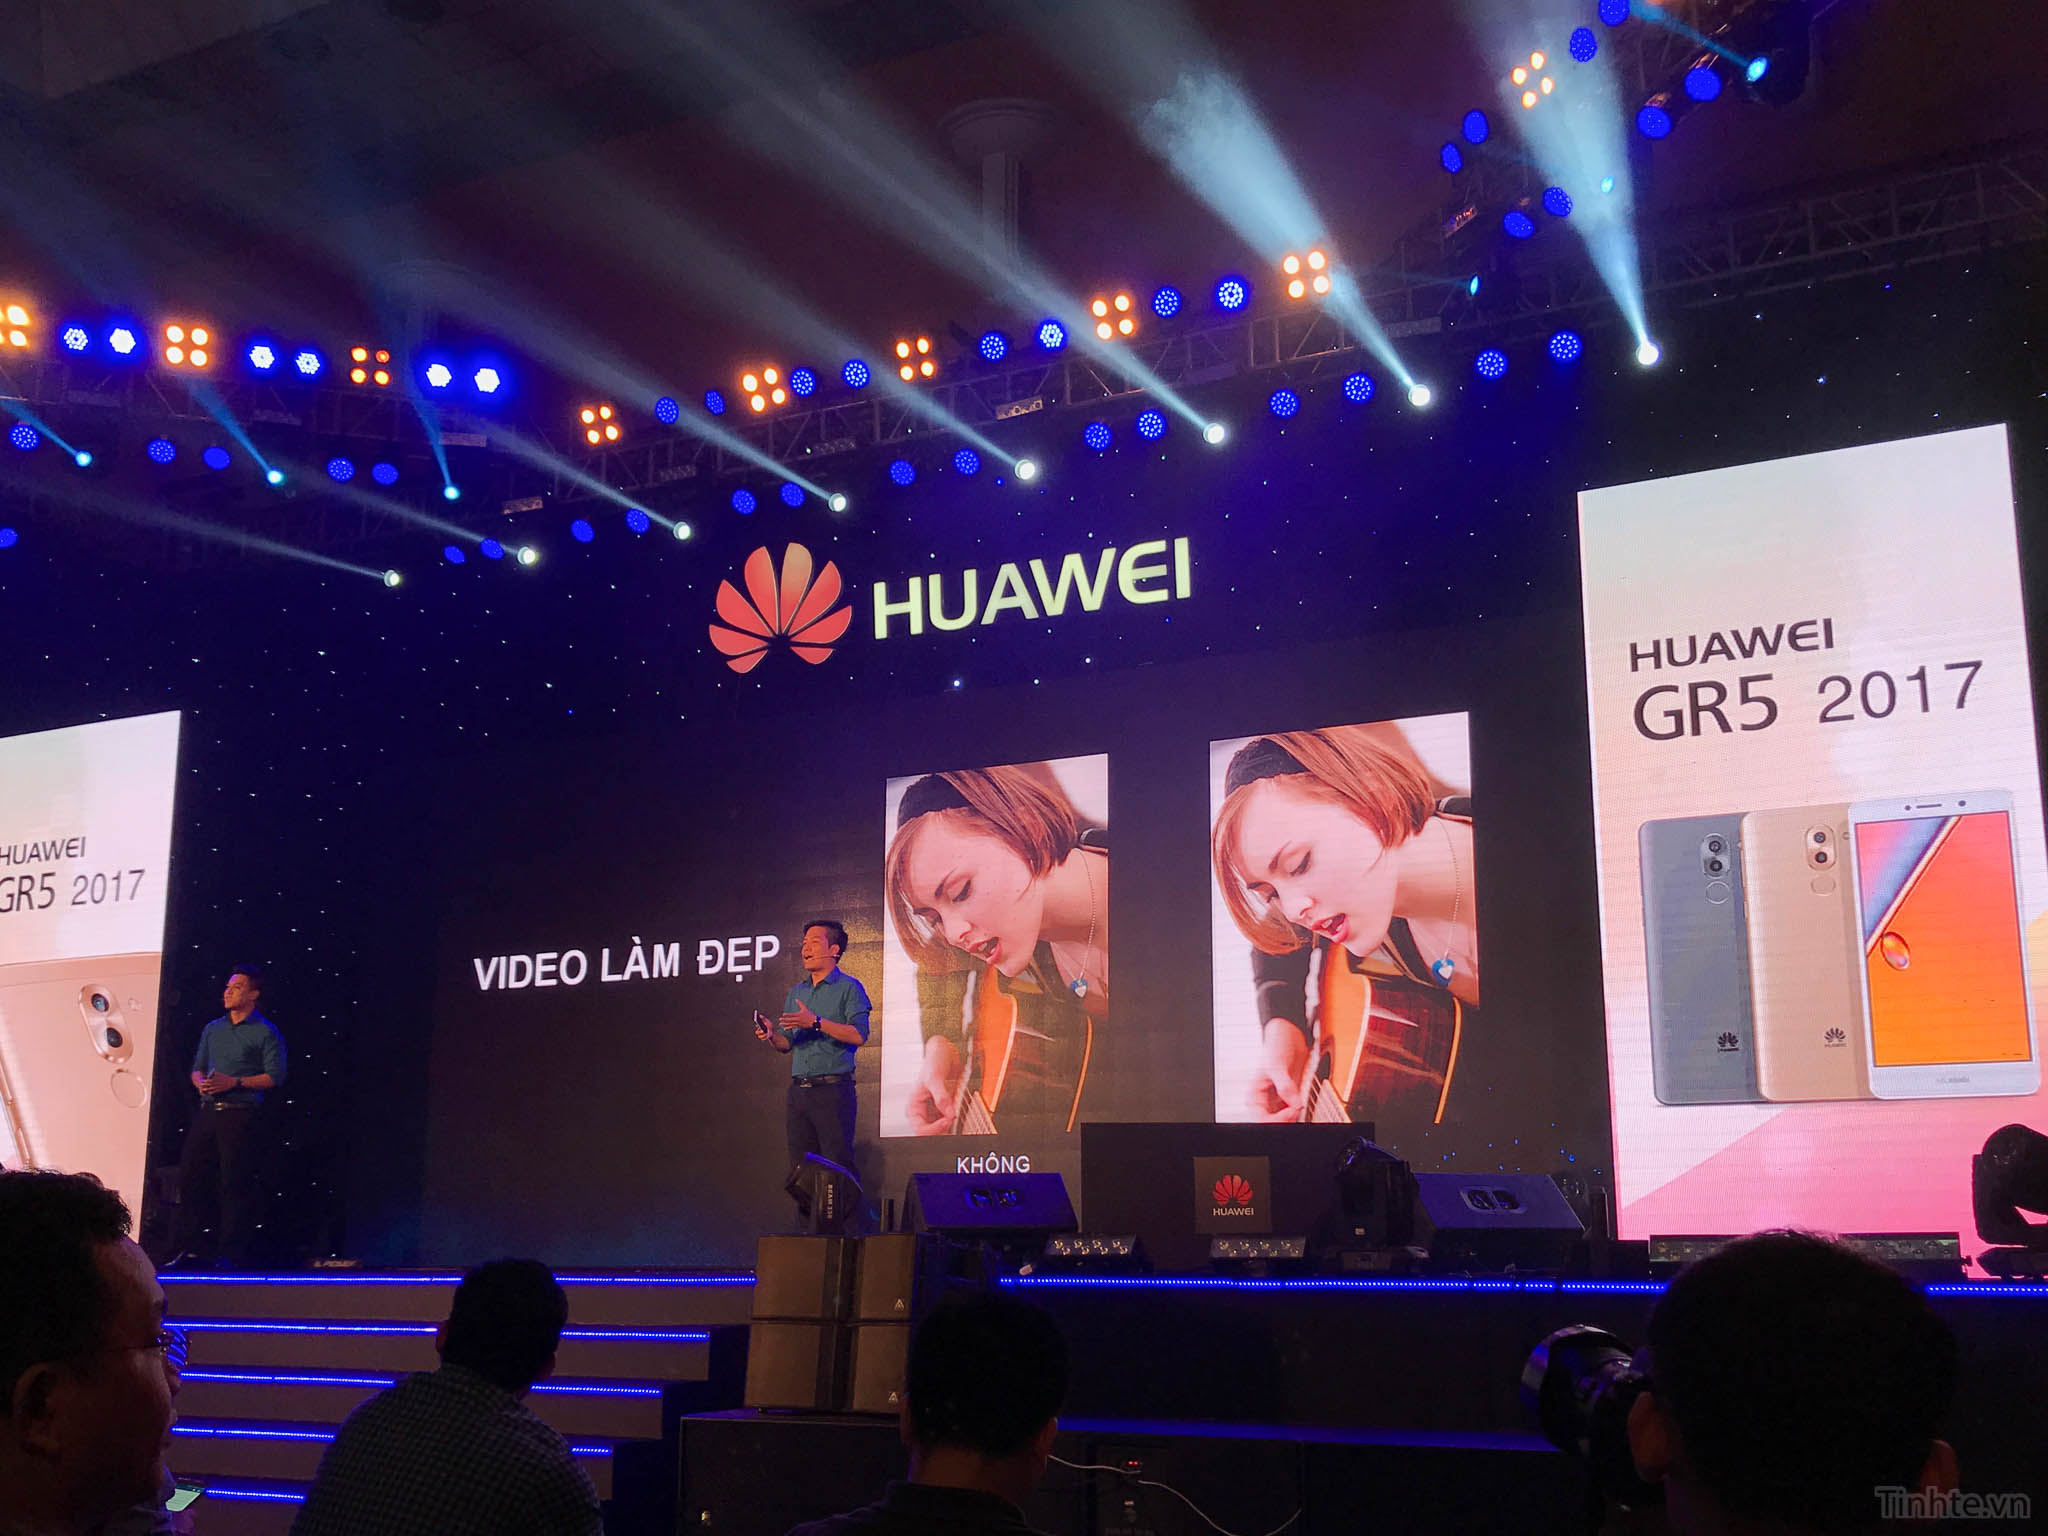 Huawei_GR5_2017_chinh_hang_tinhte.vn-7.jpg